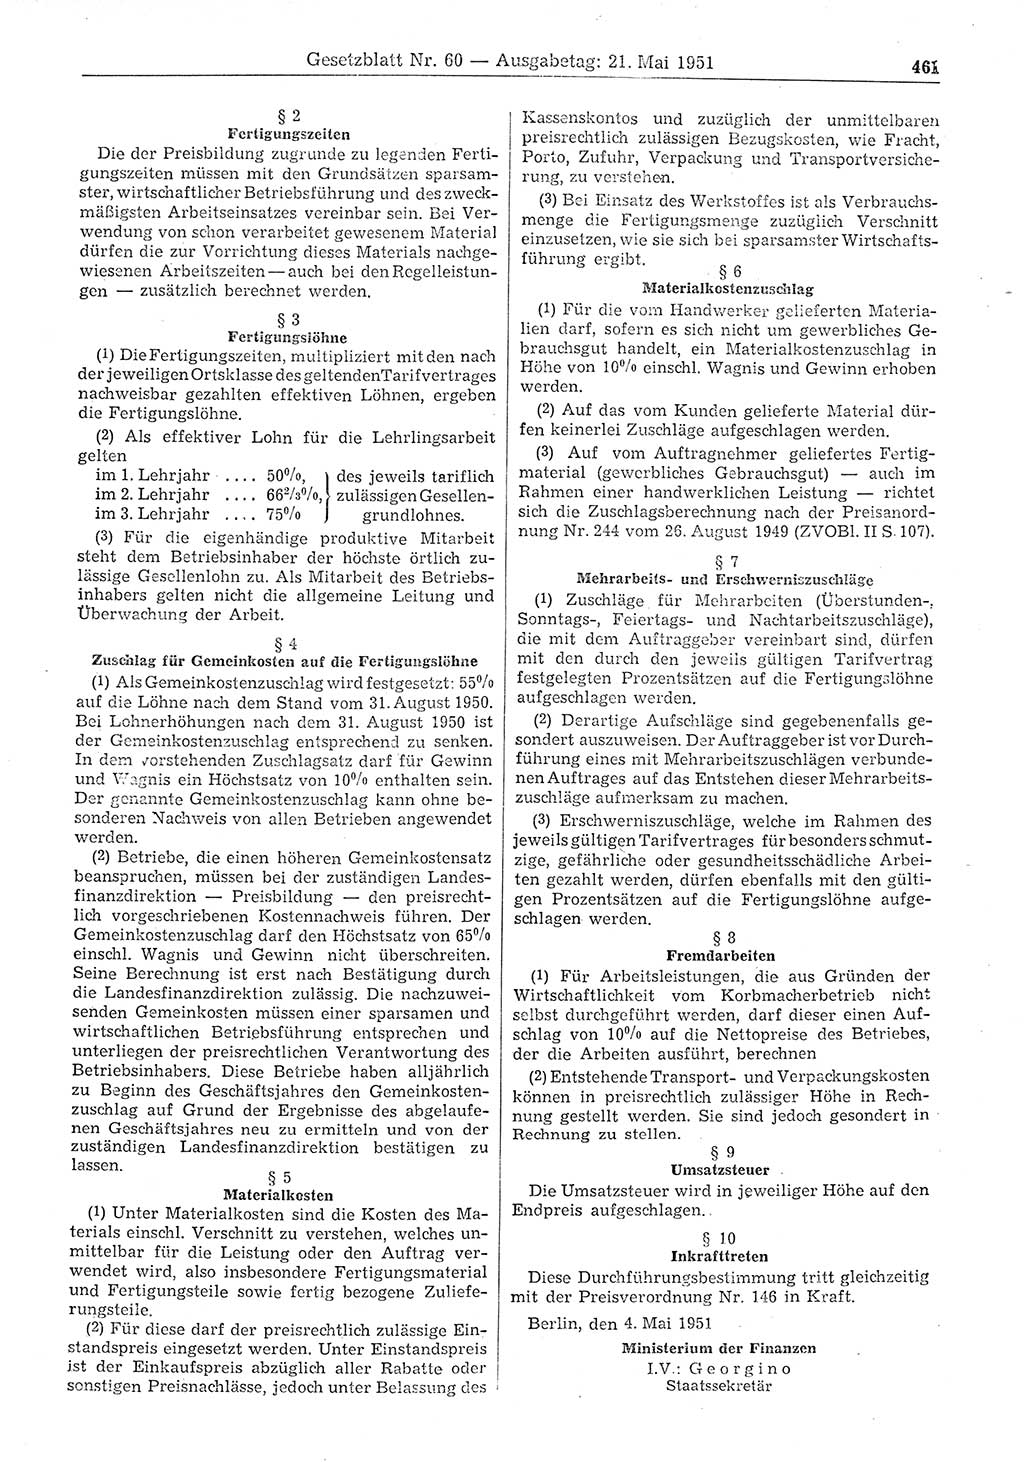 Gesetzblatt (GBl.) der Deutschen Demokratischen Republik (DDR) 1951, Seite 461 (GBl. DDR 1951, S. 461)